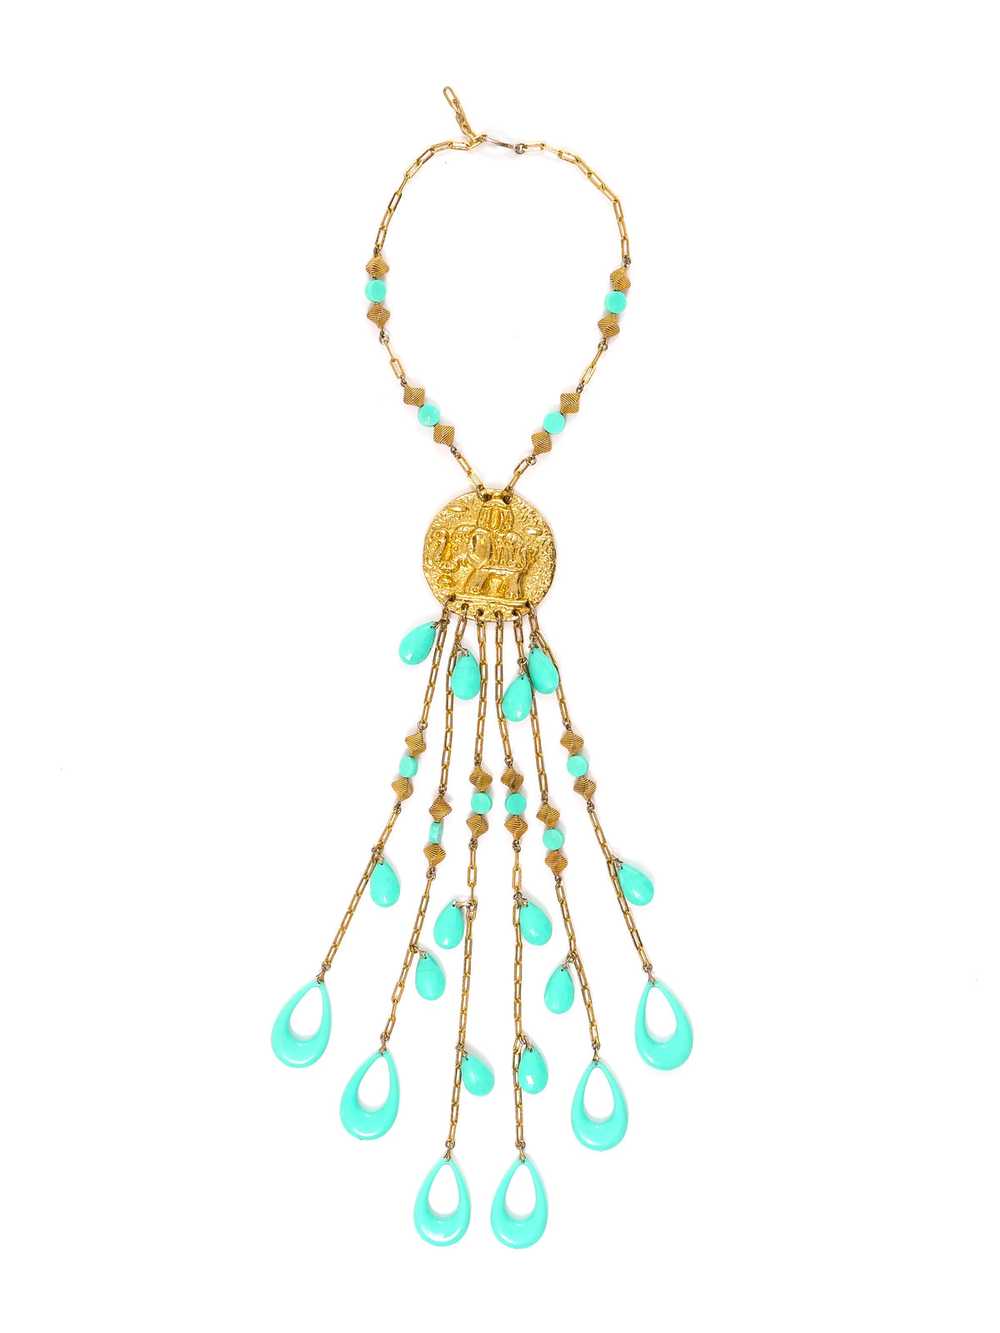 Turquoise Bead Fringed Necklace - image 1